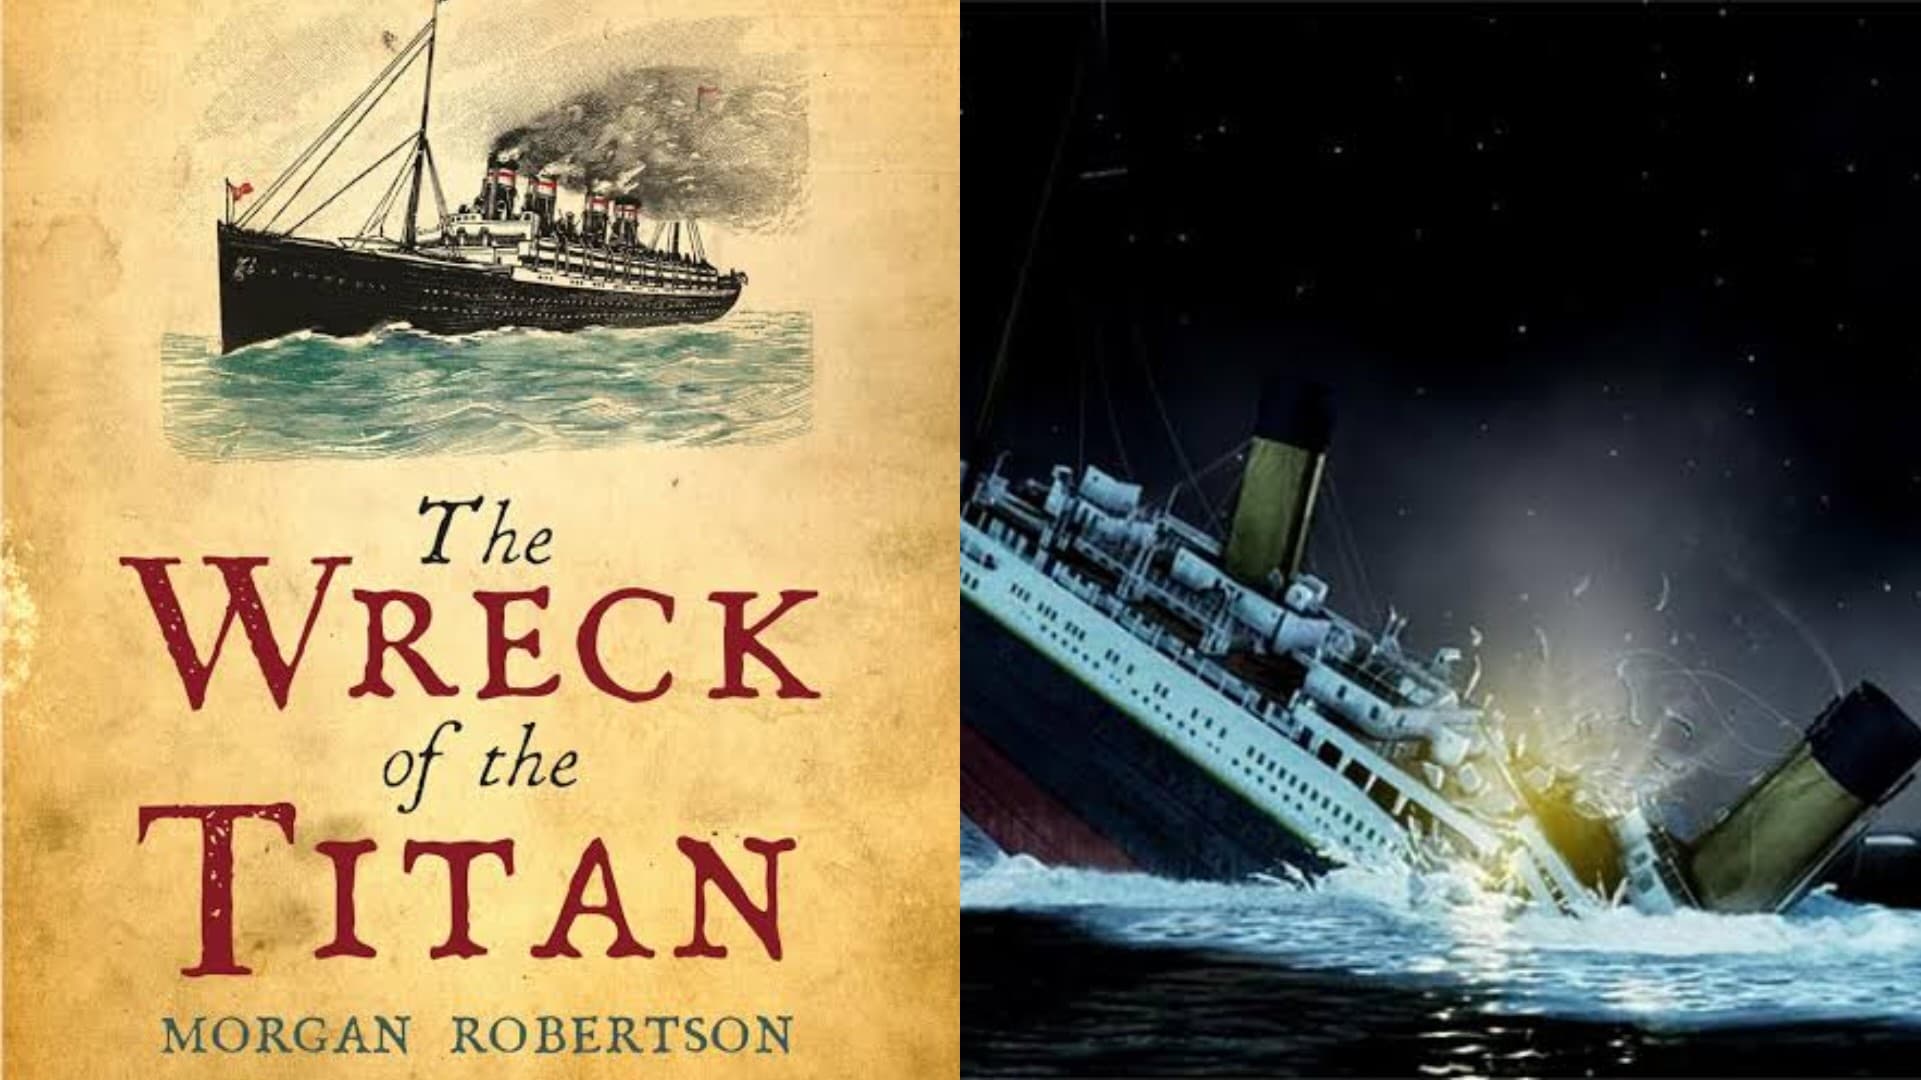 Mengejutkan Tenggelamnya Kapal Titanic, Ternyata Sudah di Tuliskan Kejadiannya Dalam Novel Ini